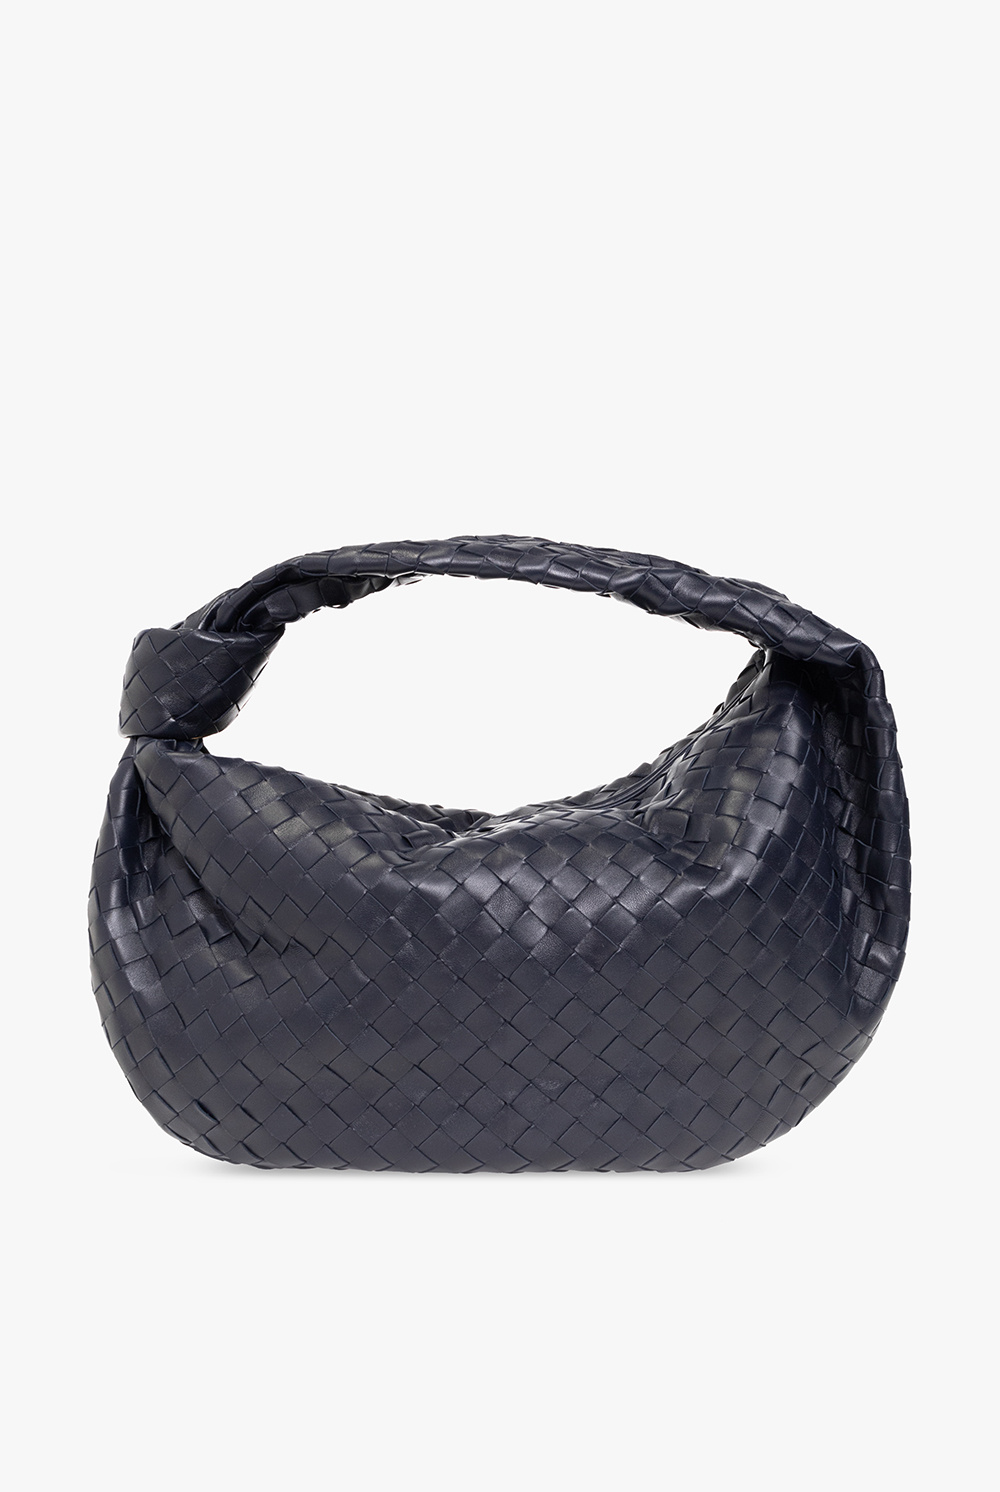 Bottega Veneta ‘Jodie Small’ hobo handbag